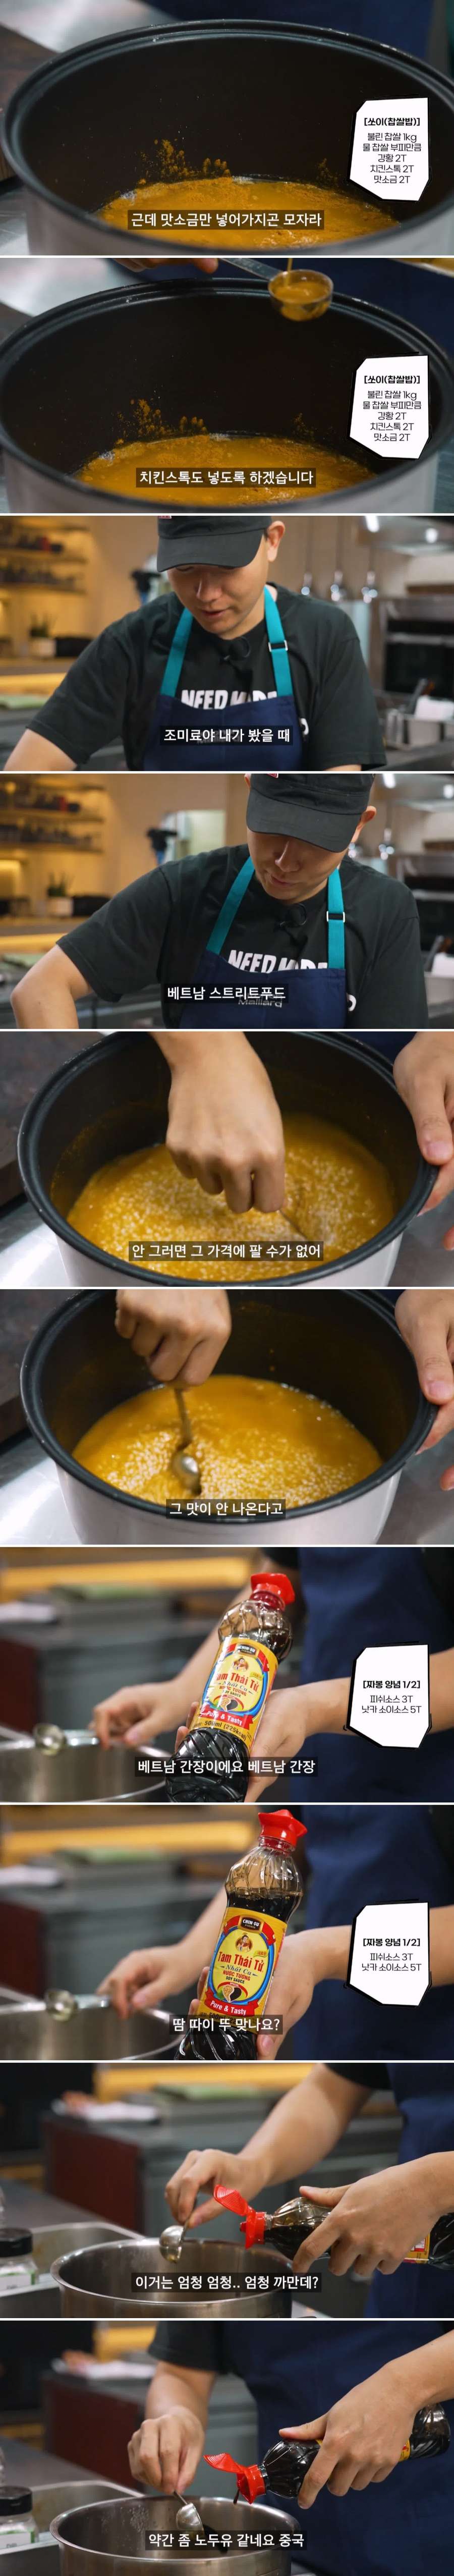 승우아빠피셜 동남아 길거리 음식이 맛있는 이유